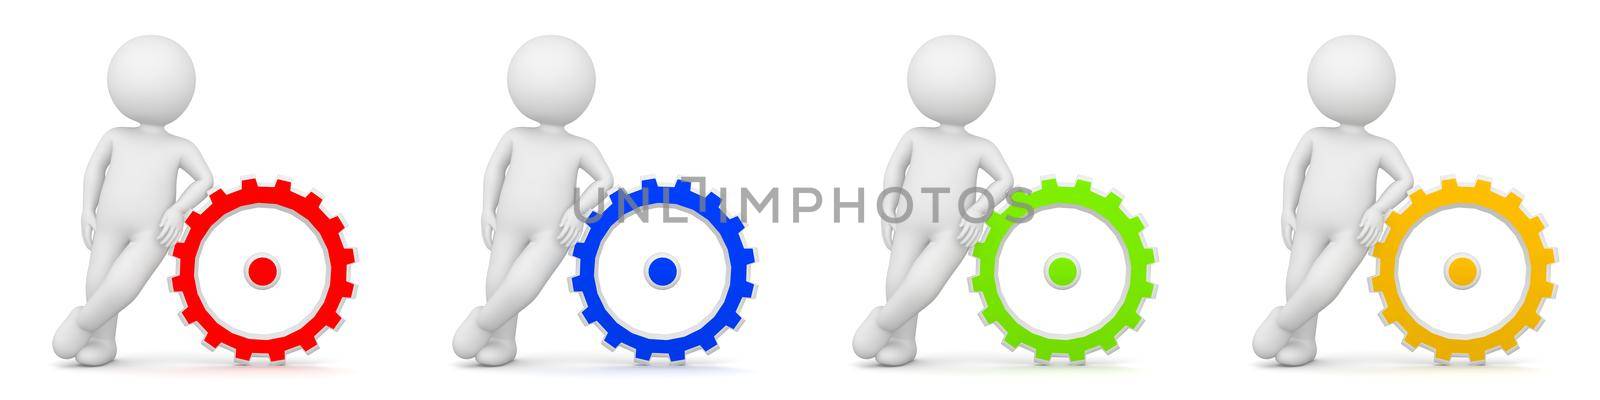 3D Rendering of man as engineer with gears or cogwheel